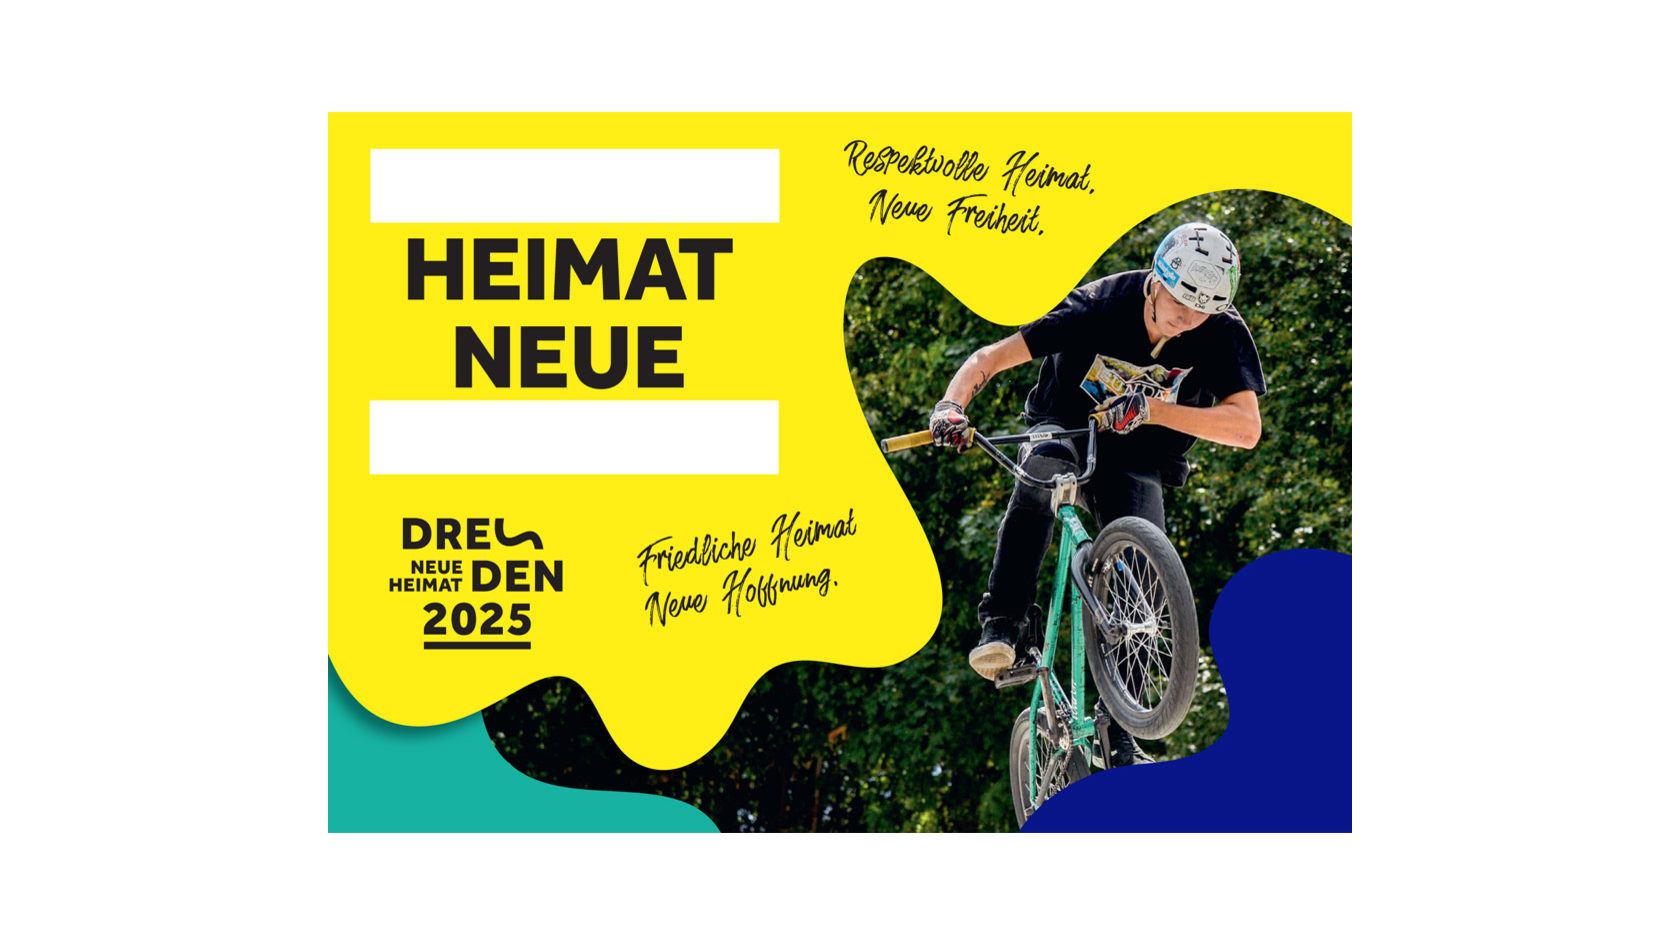 Jugendlicher BMX-Biker als Bildmotiv der Postkartenaktion, um das Motto "Neue Heimat" selbst zu ergänzen